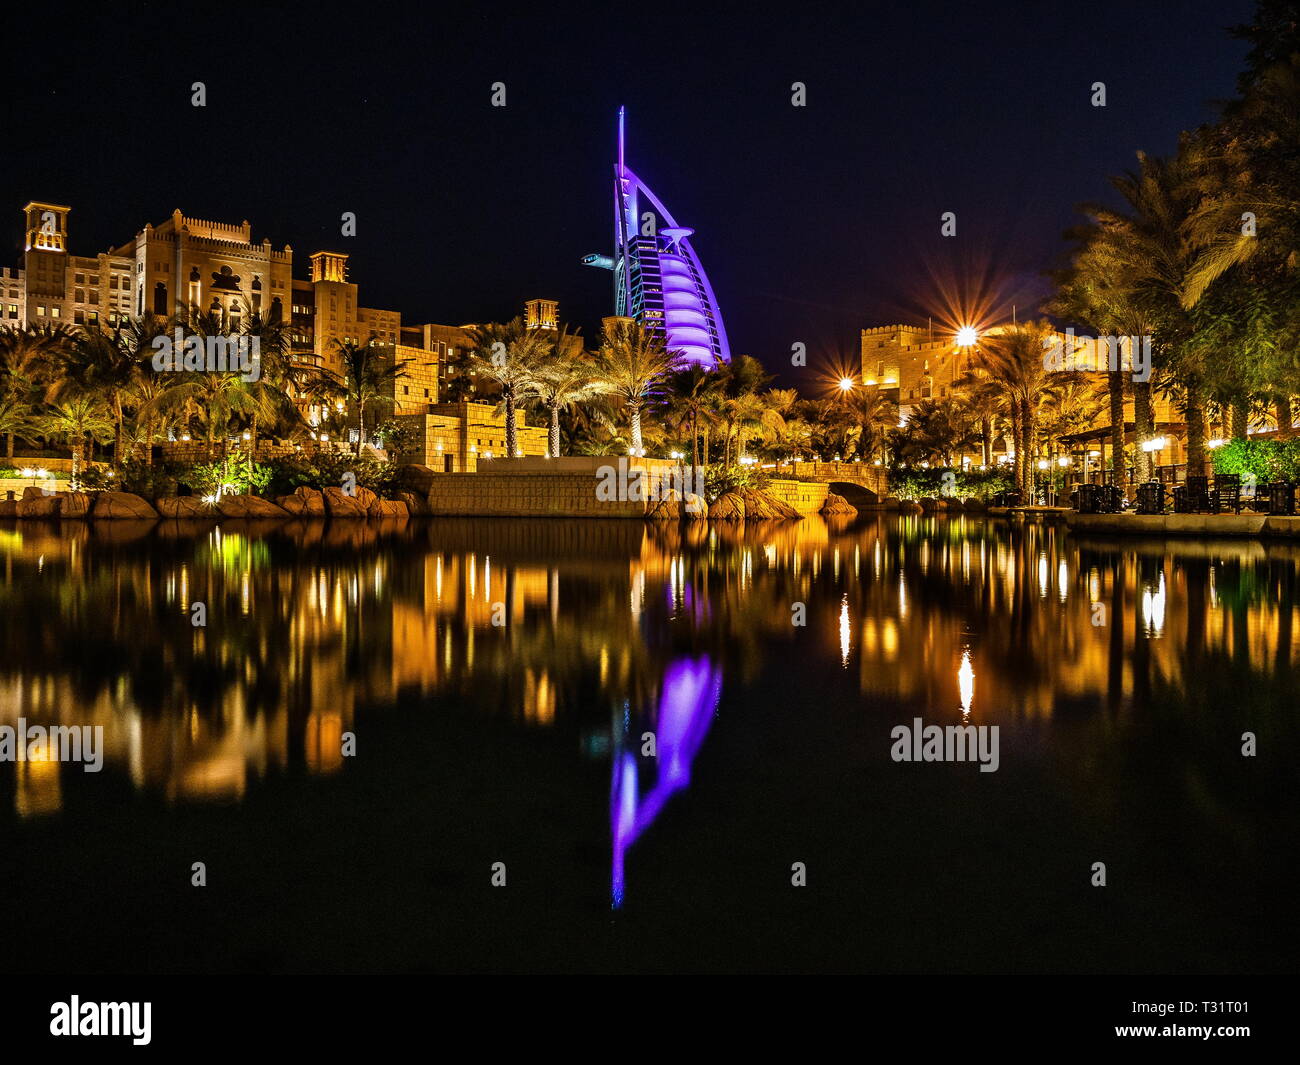 The night view of Madinat Jumeirah Stock Photo